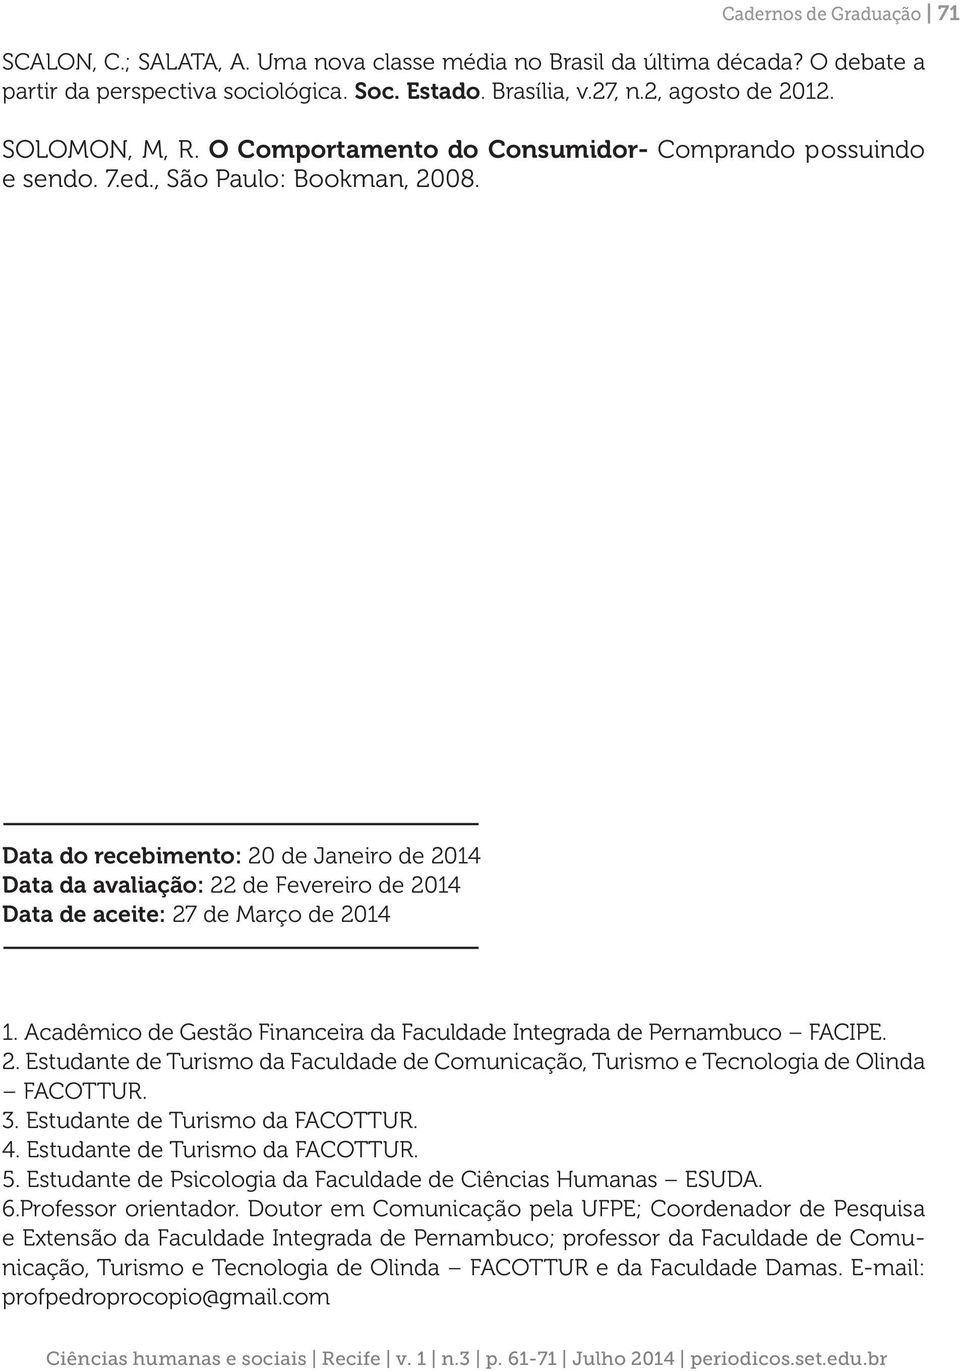 Data do recebimento: 20 de Janeiro de 2014 Data da avaliação: 22 de Fevereiro de 2014 Data de aceite: 27 de Março de 2014 1. Acadêmico de Gestão Financeira da Faculdade Integrada de Pernambuco FACIPE.